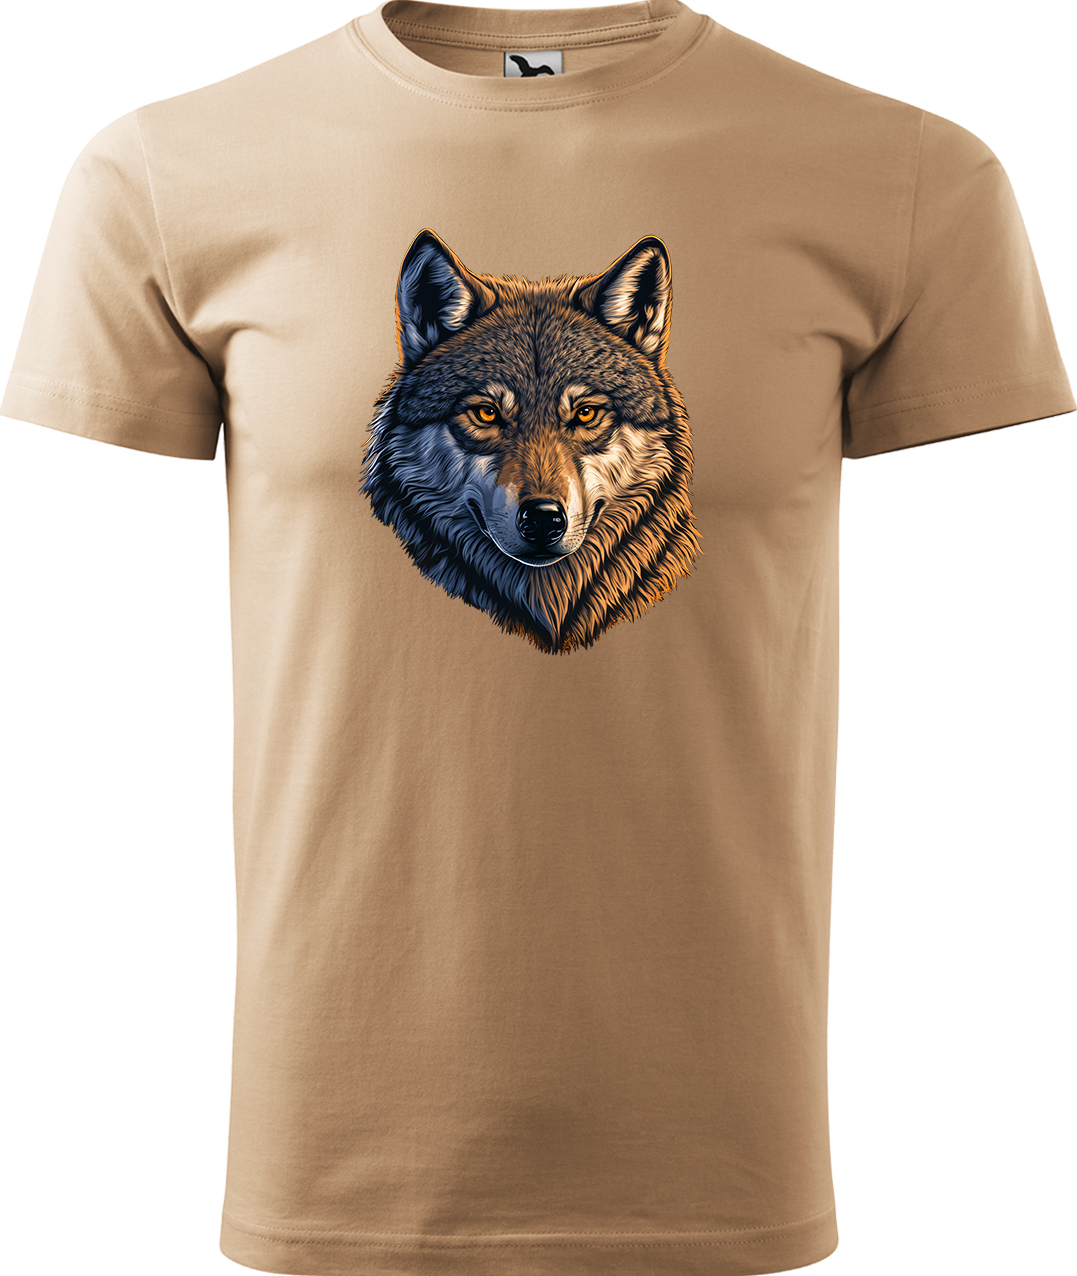 Pánské tričko s vlkem - Hlava vlka Velikost: M, Barva: Písková (08), Střih: pánský